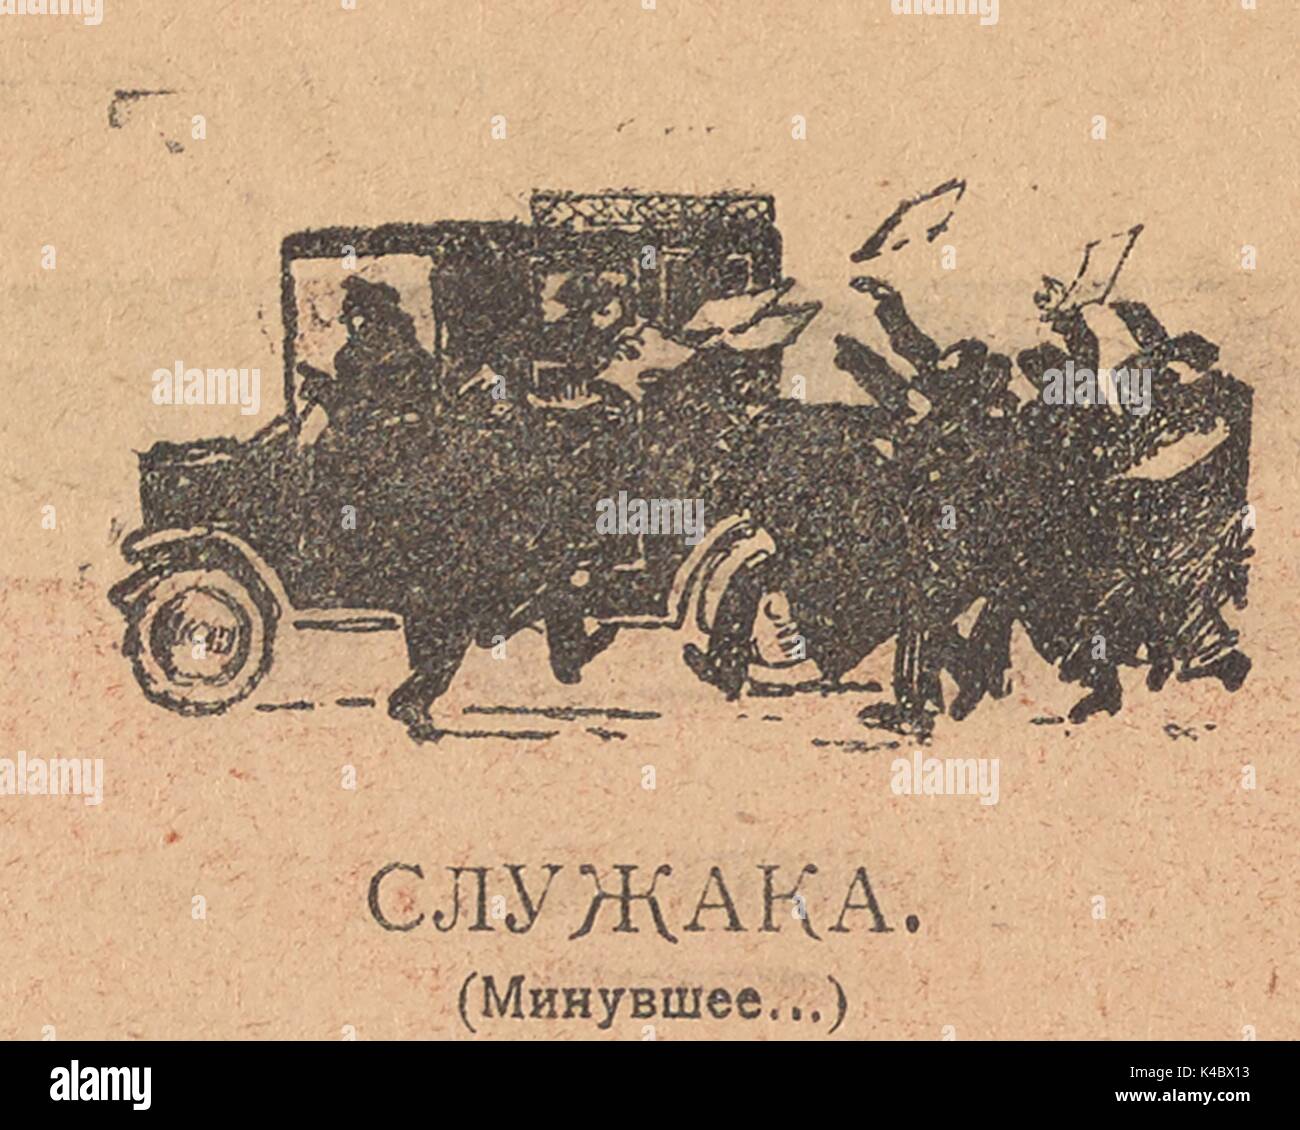 Karikatur aus der Russischen satirische Zeitschrift Bich (geissel) zeigt eine Menge von Menschen fangen Papiere aus ein Auto von einem Mann auf dem Rücksitz geworfen, mit Text lesen, "mitkämpfer (ehem...)", 1917. Stockfoto